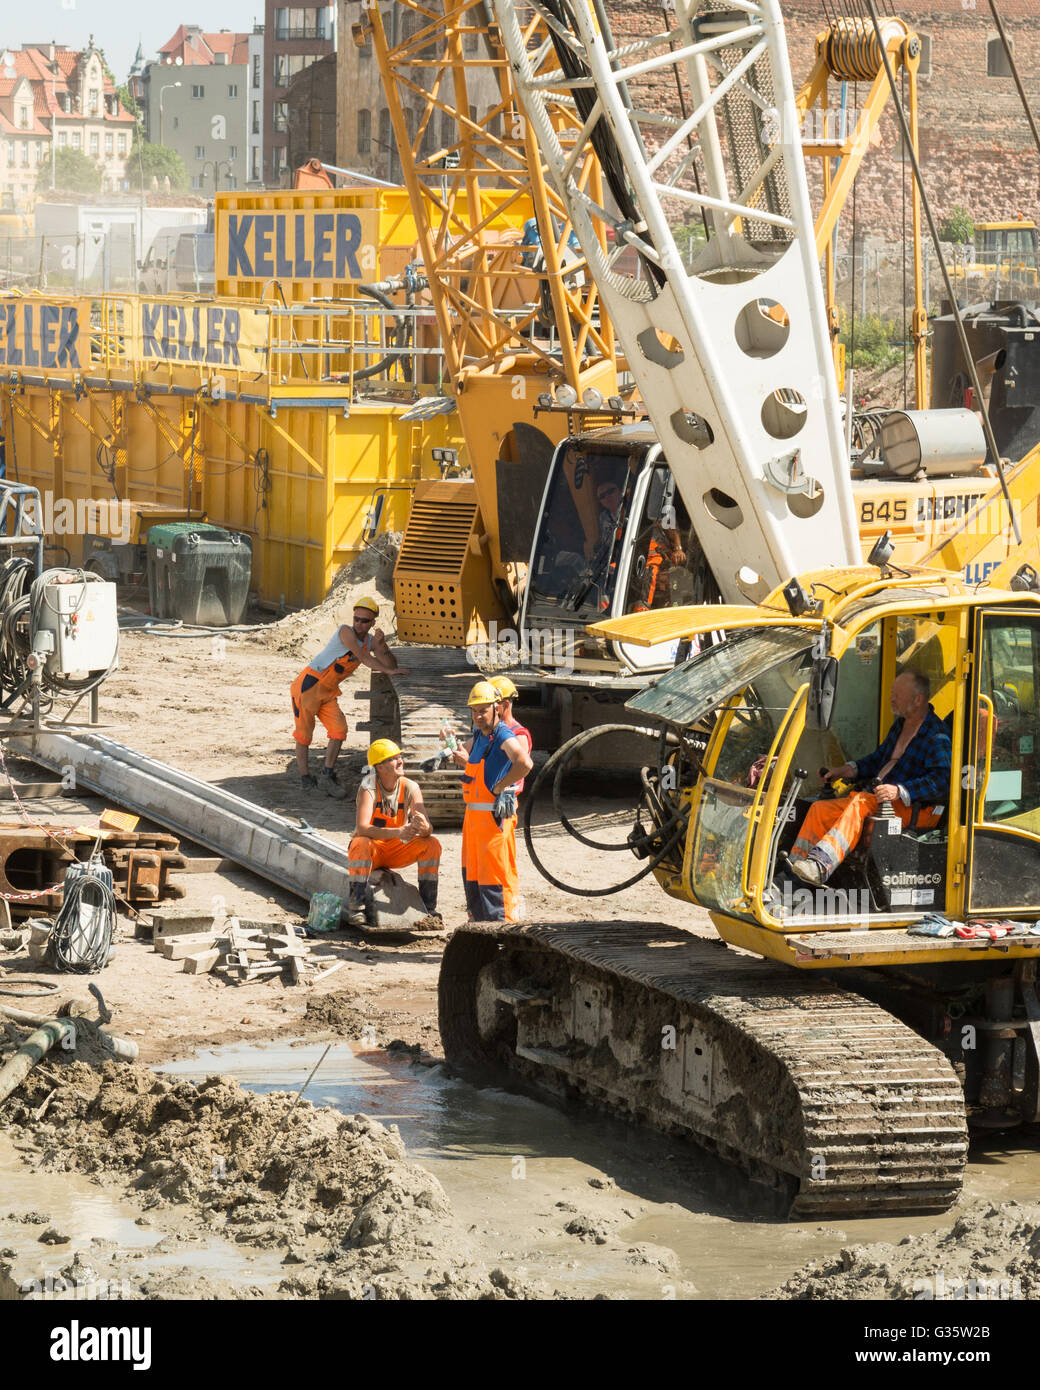 L'économie polonaise : les travailleurs de la construction sur le chantier de construction sur l'île de grenier, Gdansk, Pologne, Europe Banque D'Images